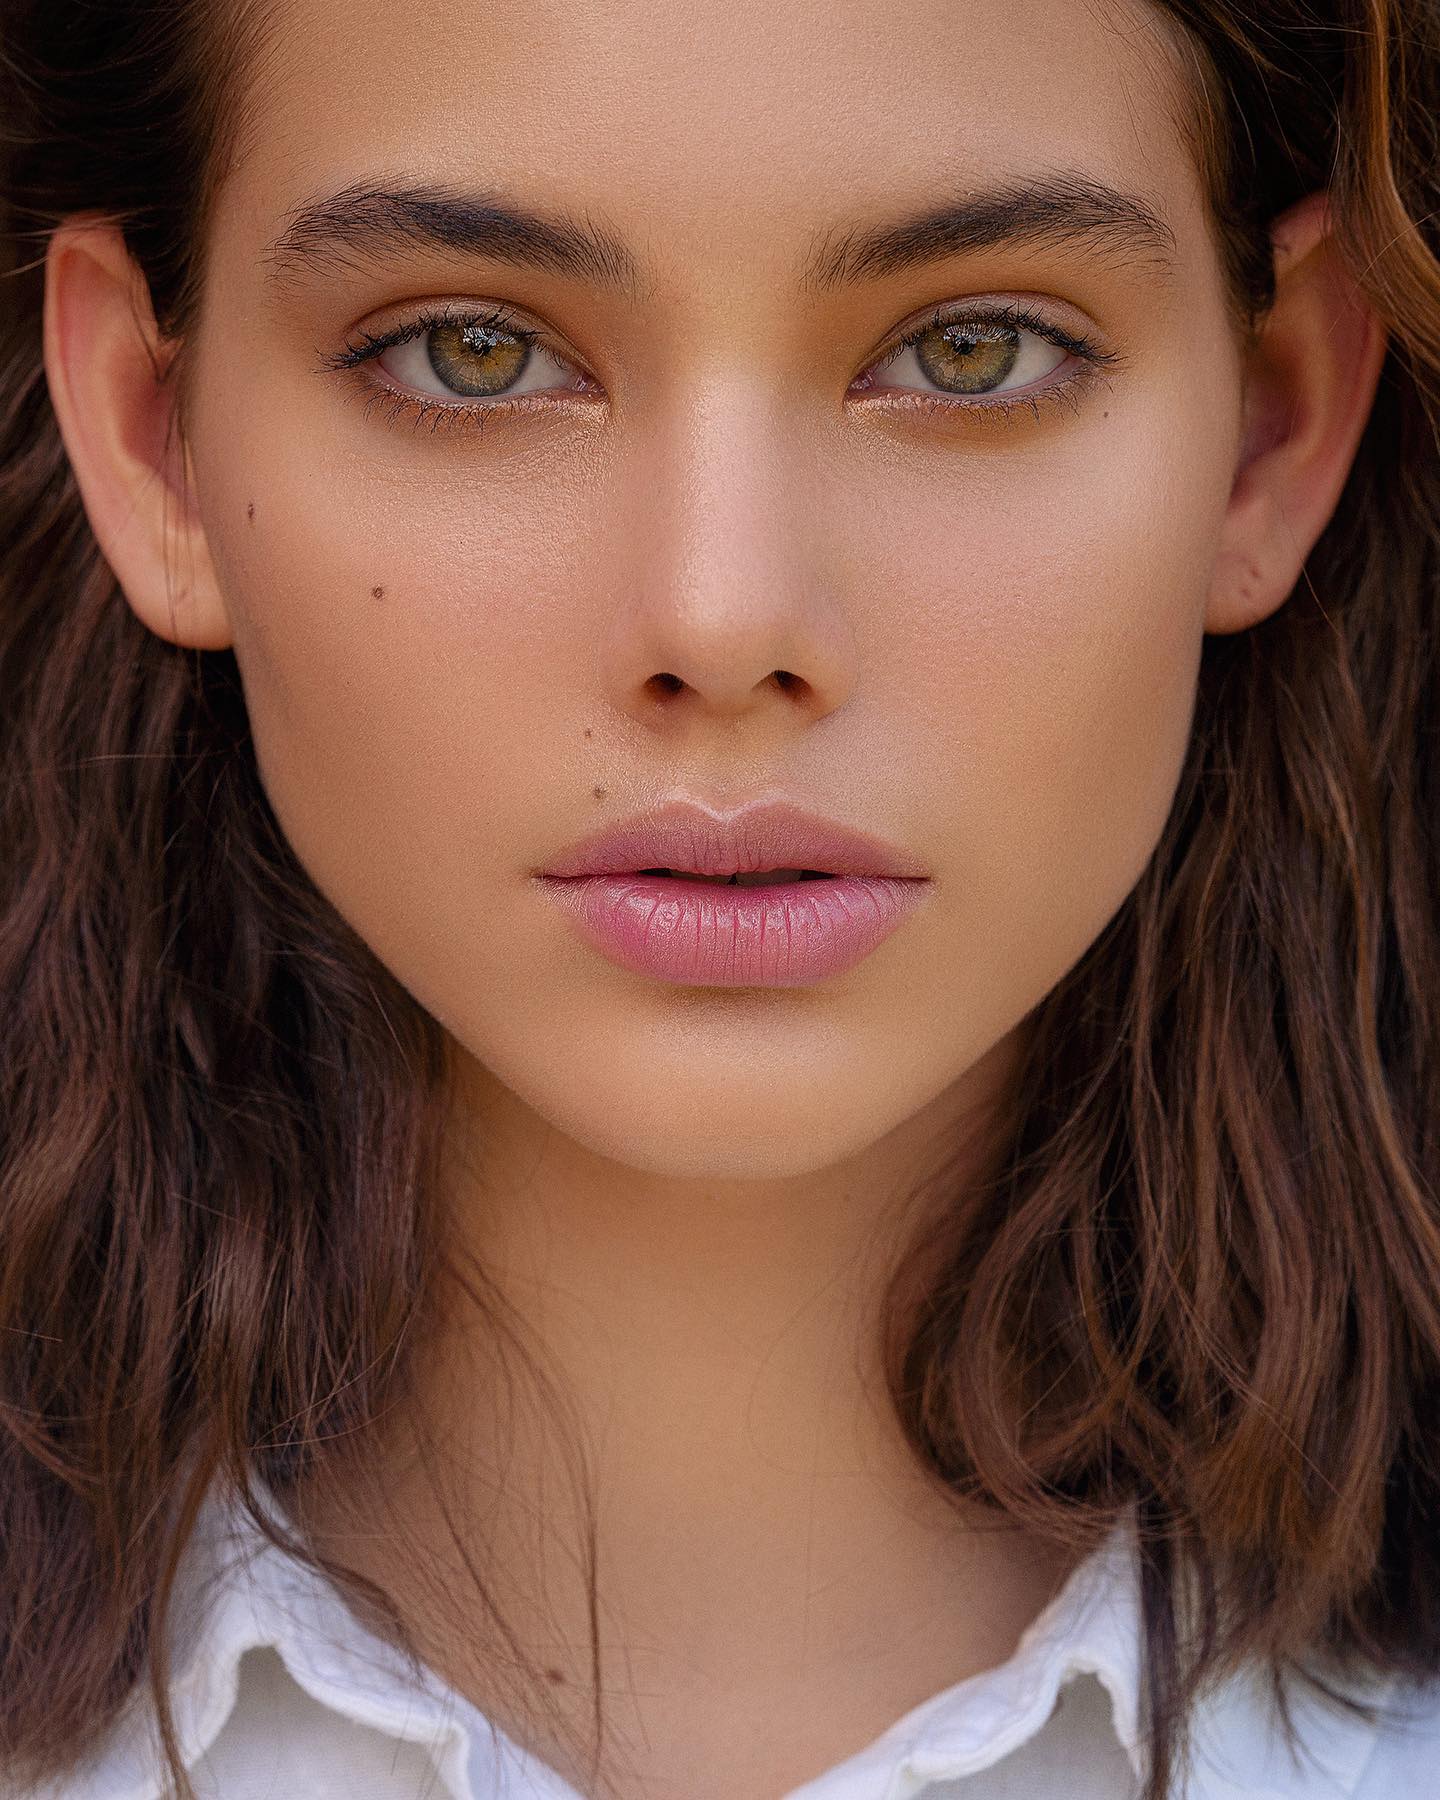 Ланея Грейс: самые красивые фото модели из Калифорнии 11 Laneya Grace